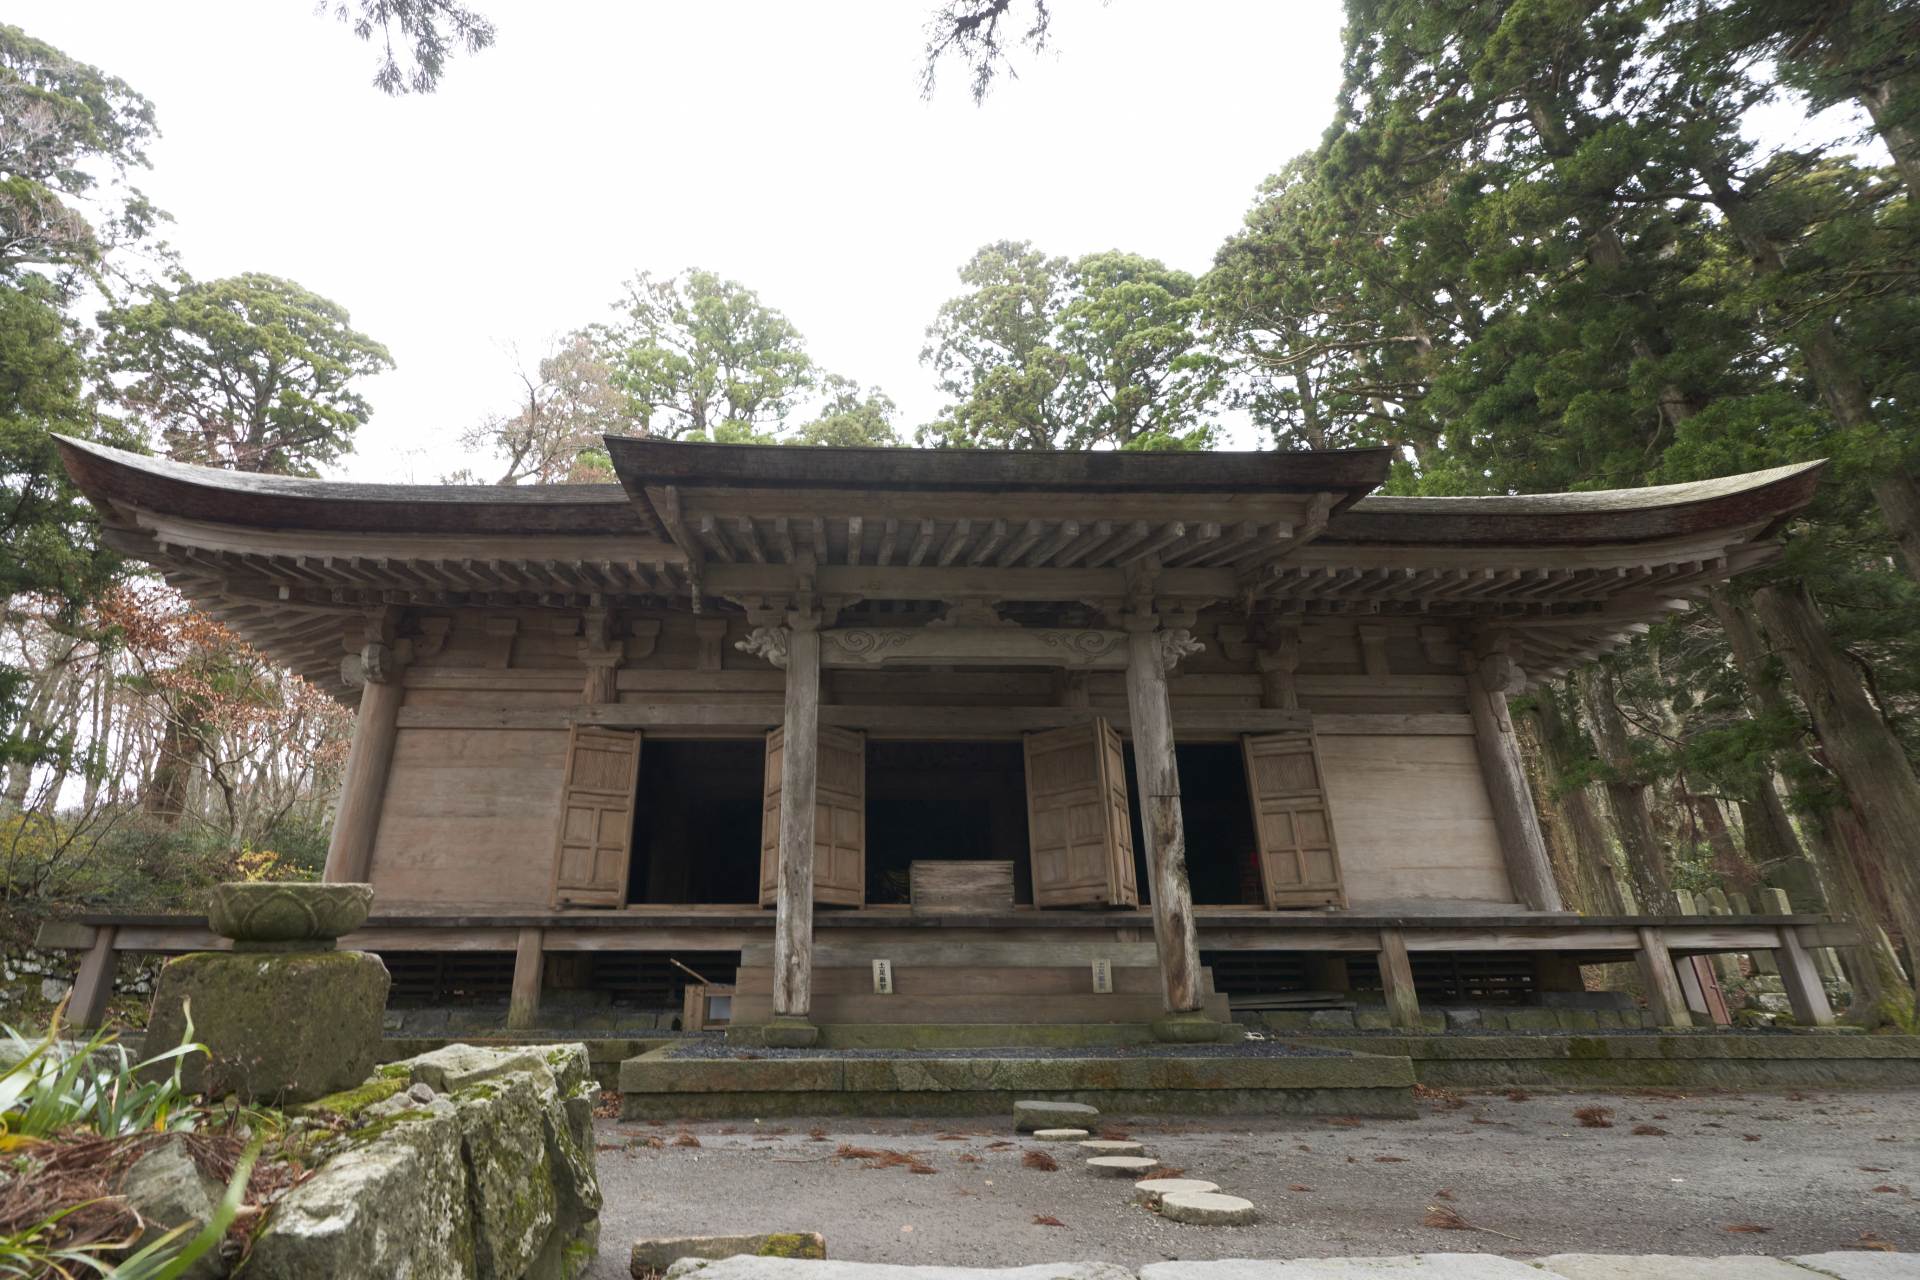 大山寺阿弥陀堂。山内に現存する堂宇として最古の歴史をもつ